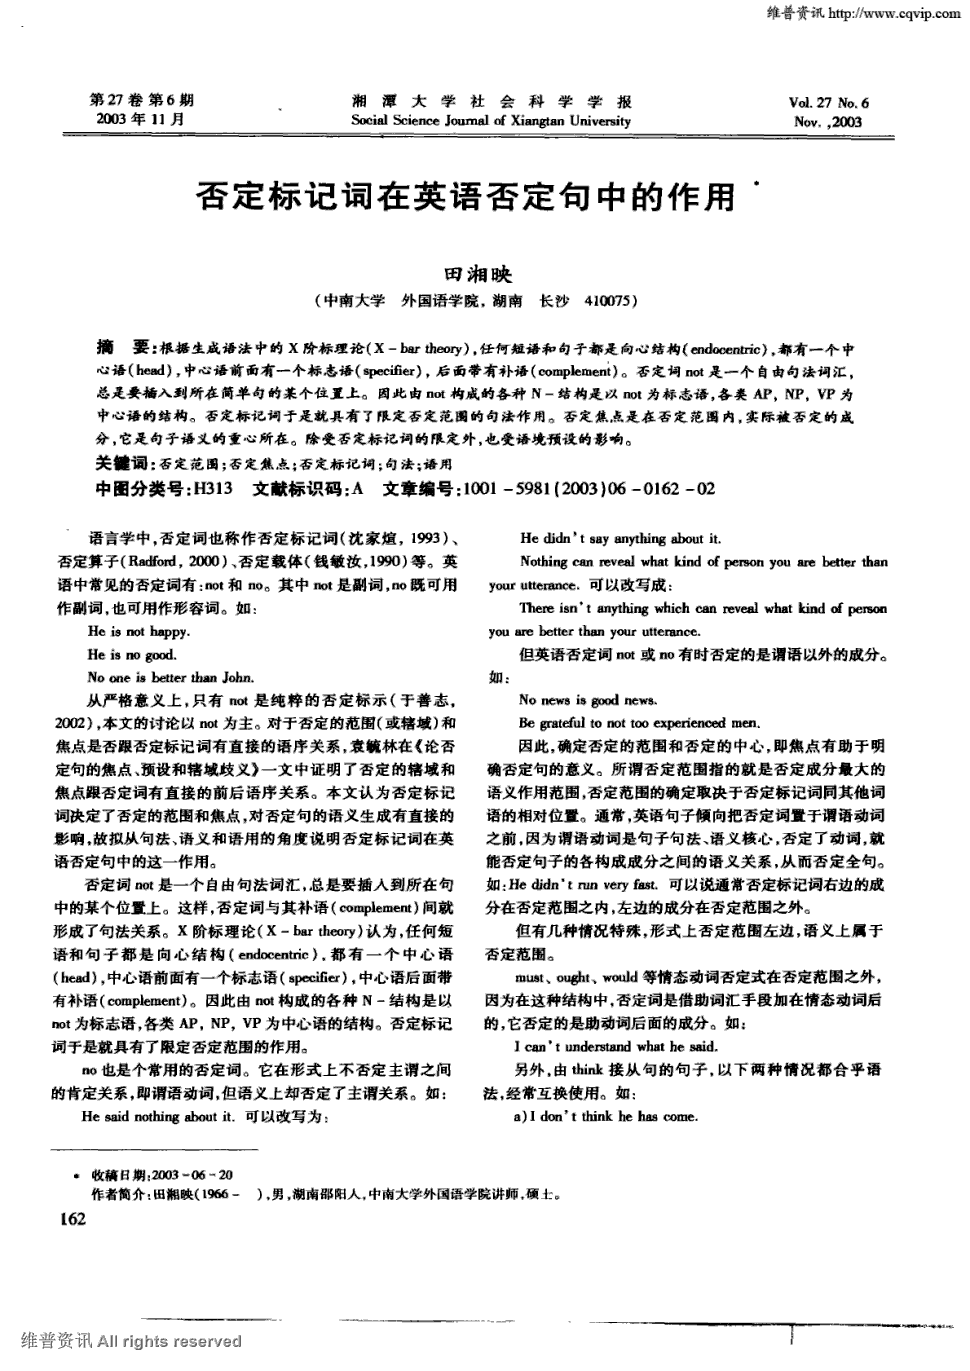 《湘潭大学社会科学学报》2003年第6期 162-163,共2页田湘映